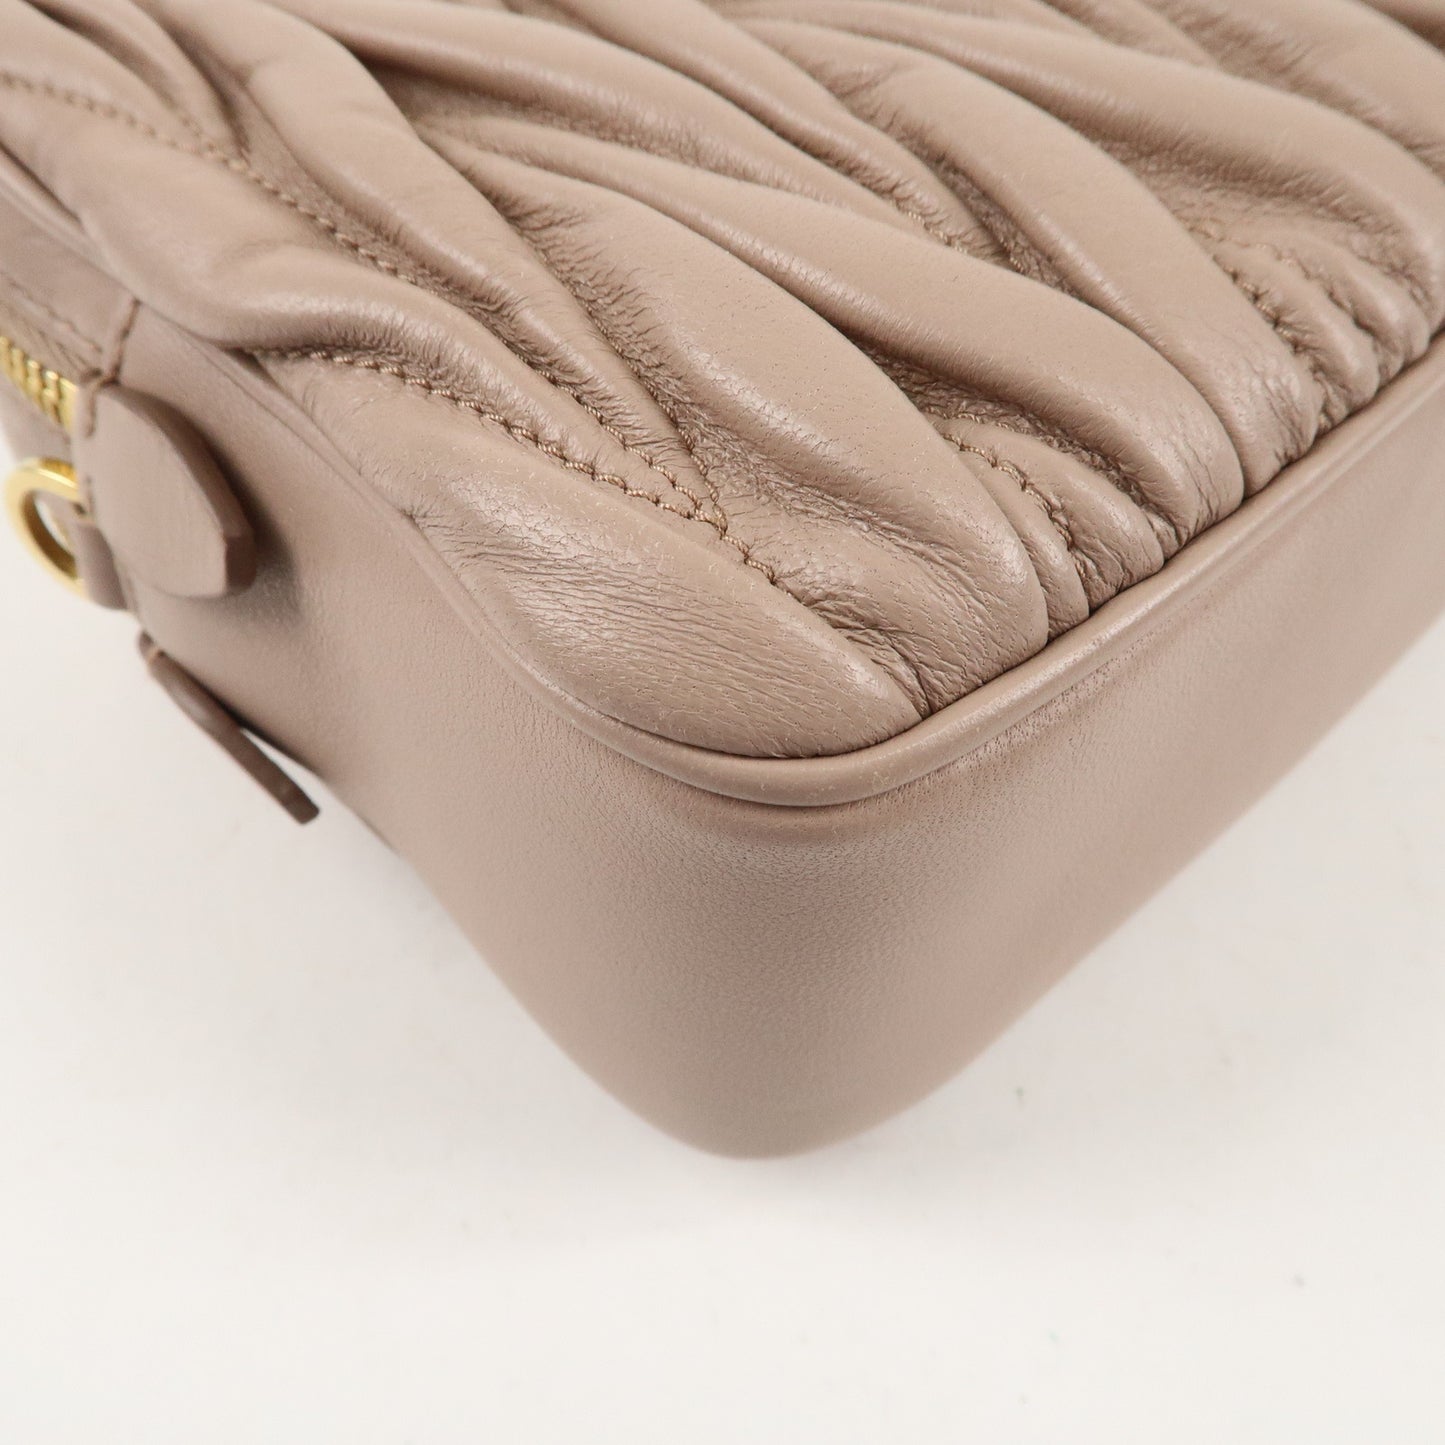 MIU MIU Matelasse Lamb Leather Shoulder Bag Pink Beige 5BH539